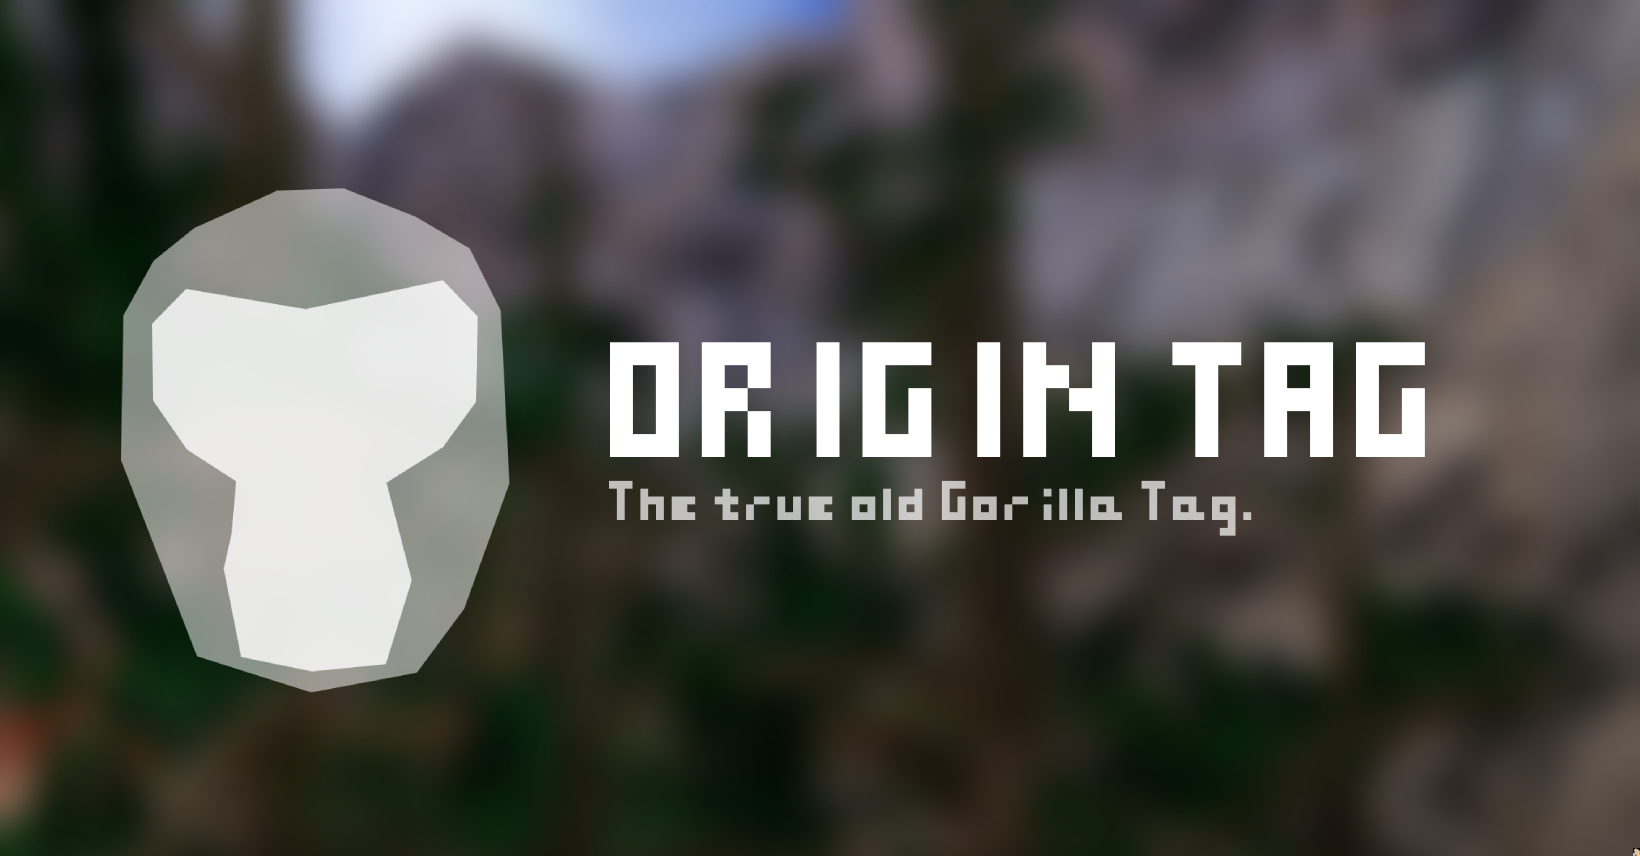 Origin Tag